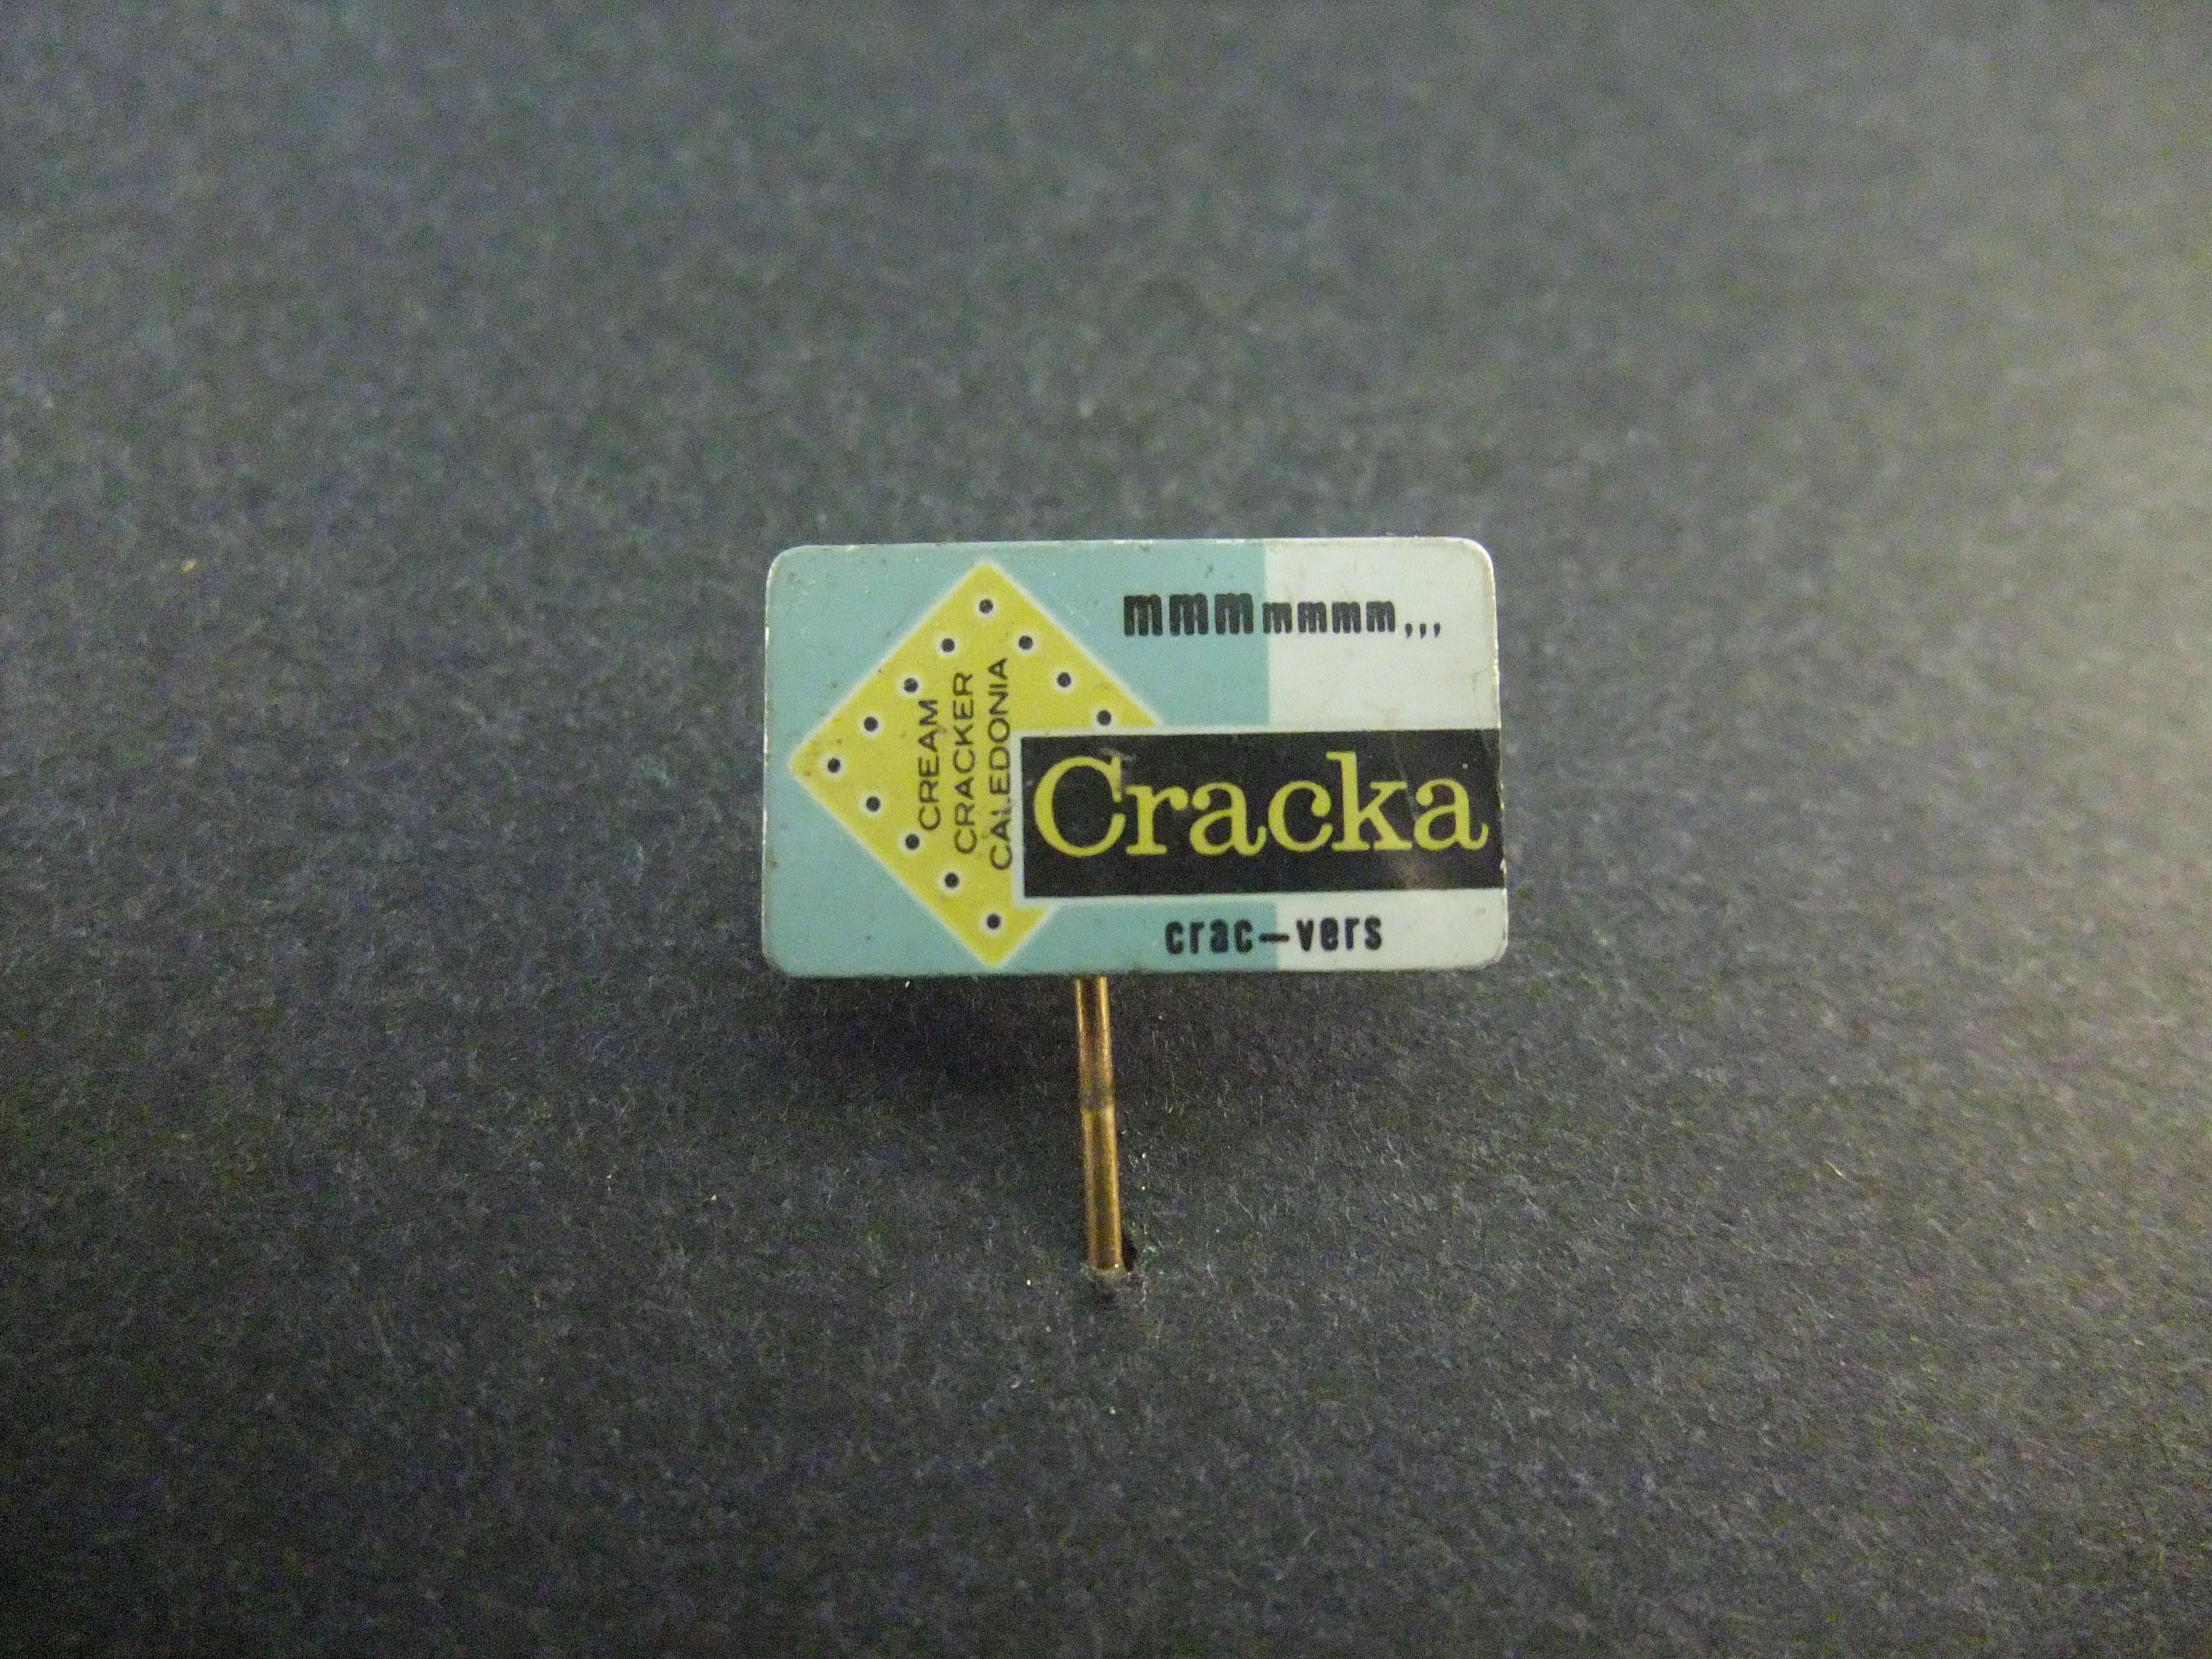 Cracka MMMmmm,crac-vers Cream Cracker Caledonia